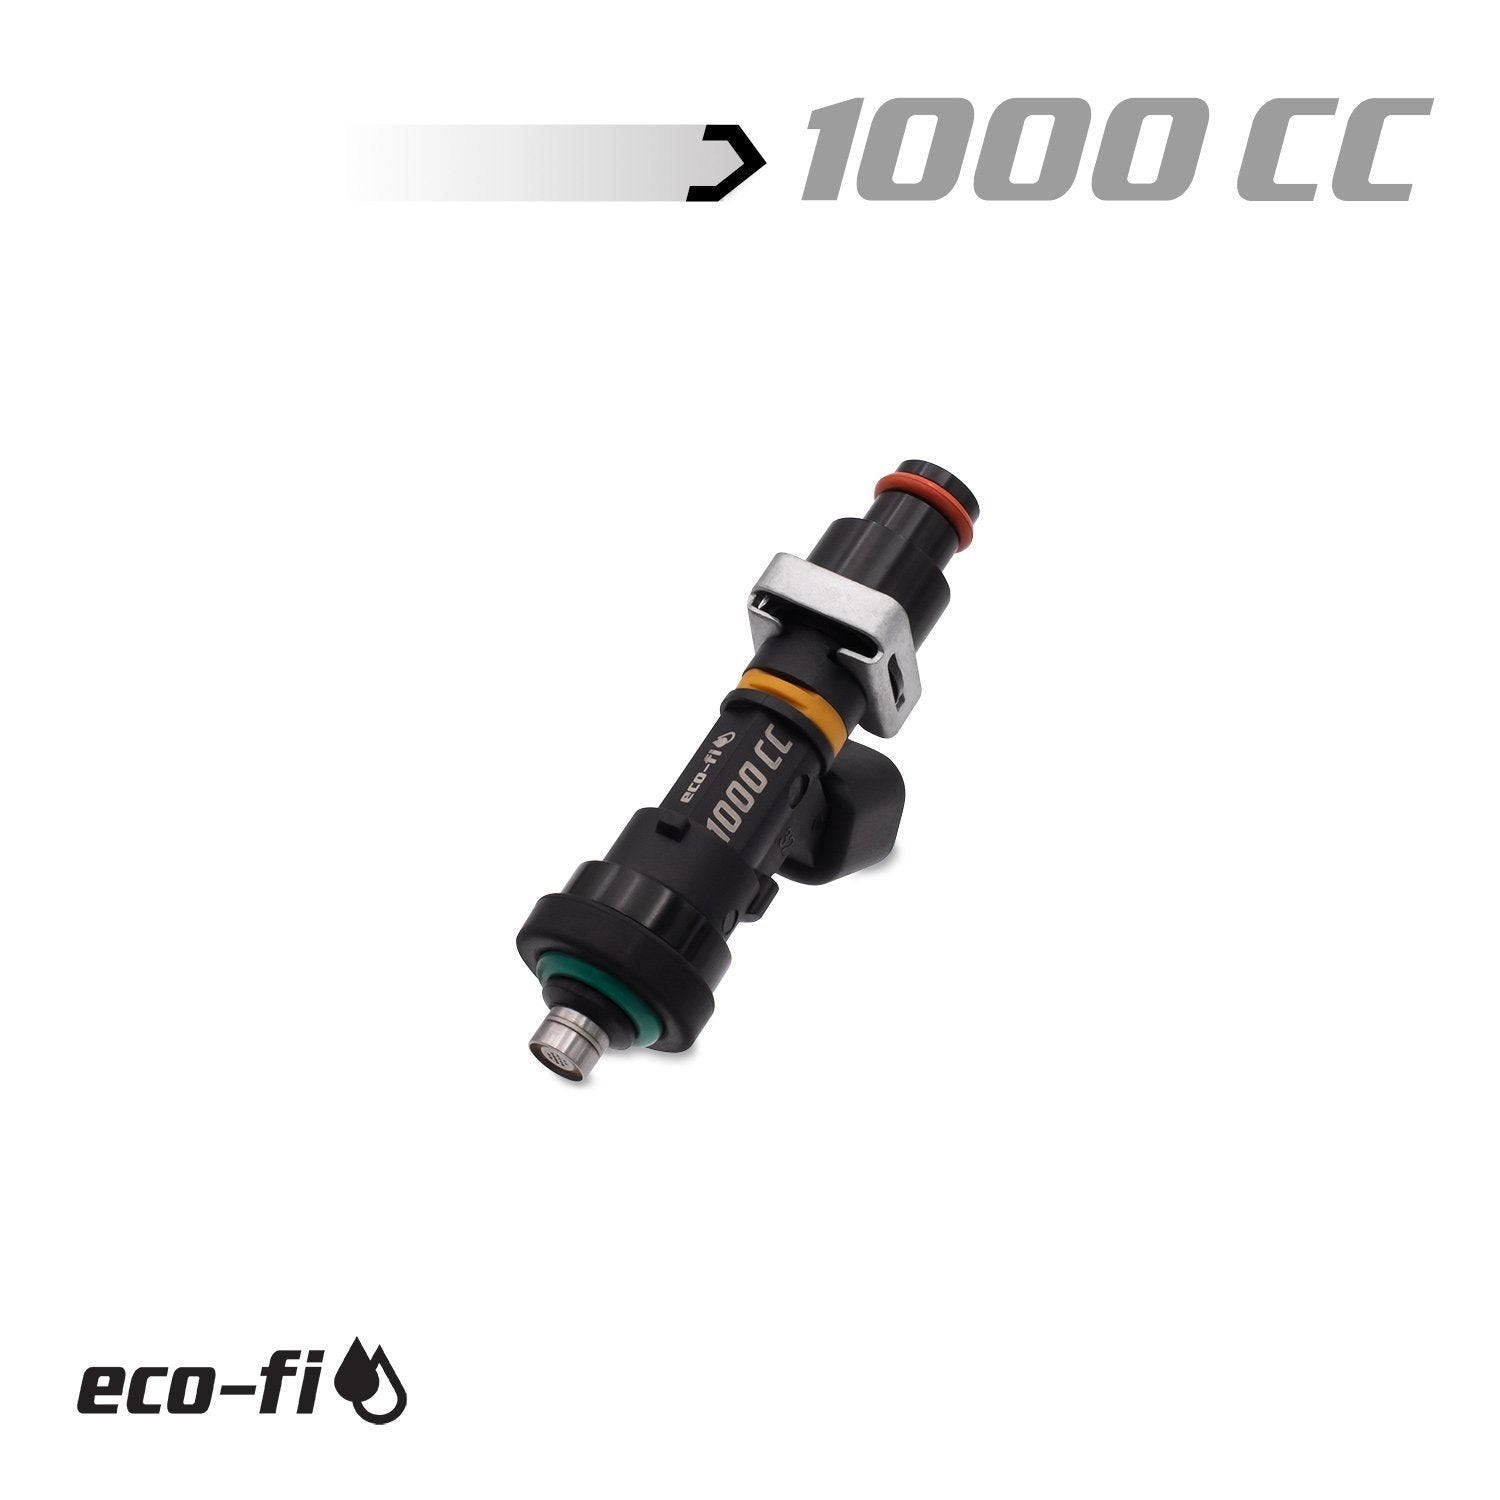 Blox Racing Honda B,D,H,F-Series 1000cc Injectors - Shortie Set of 4